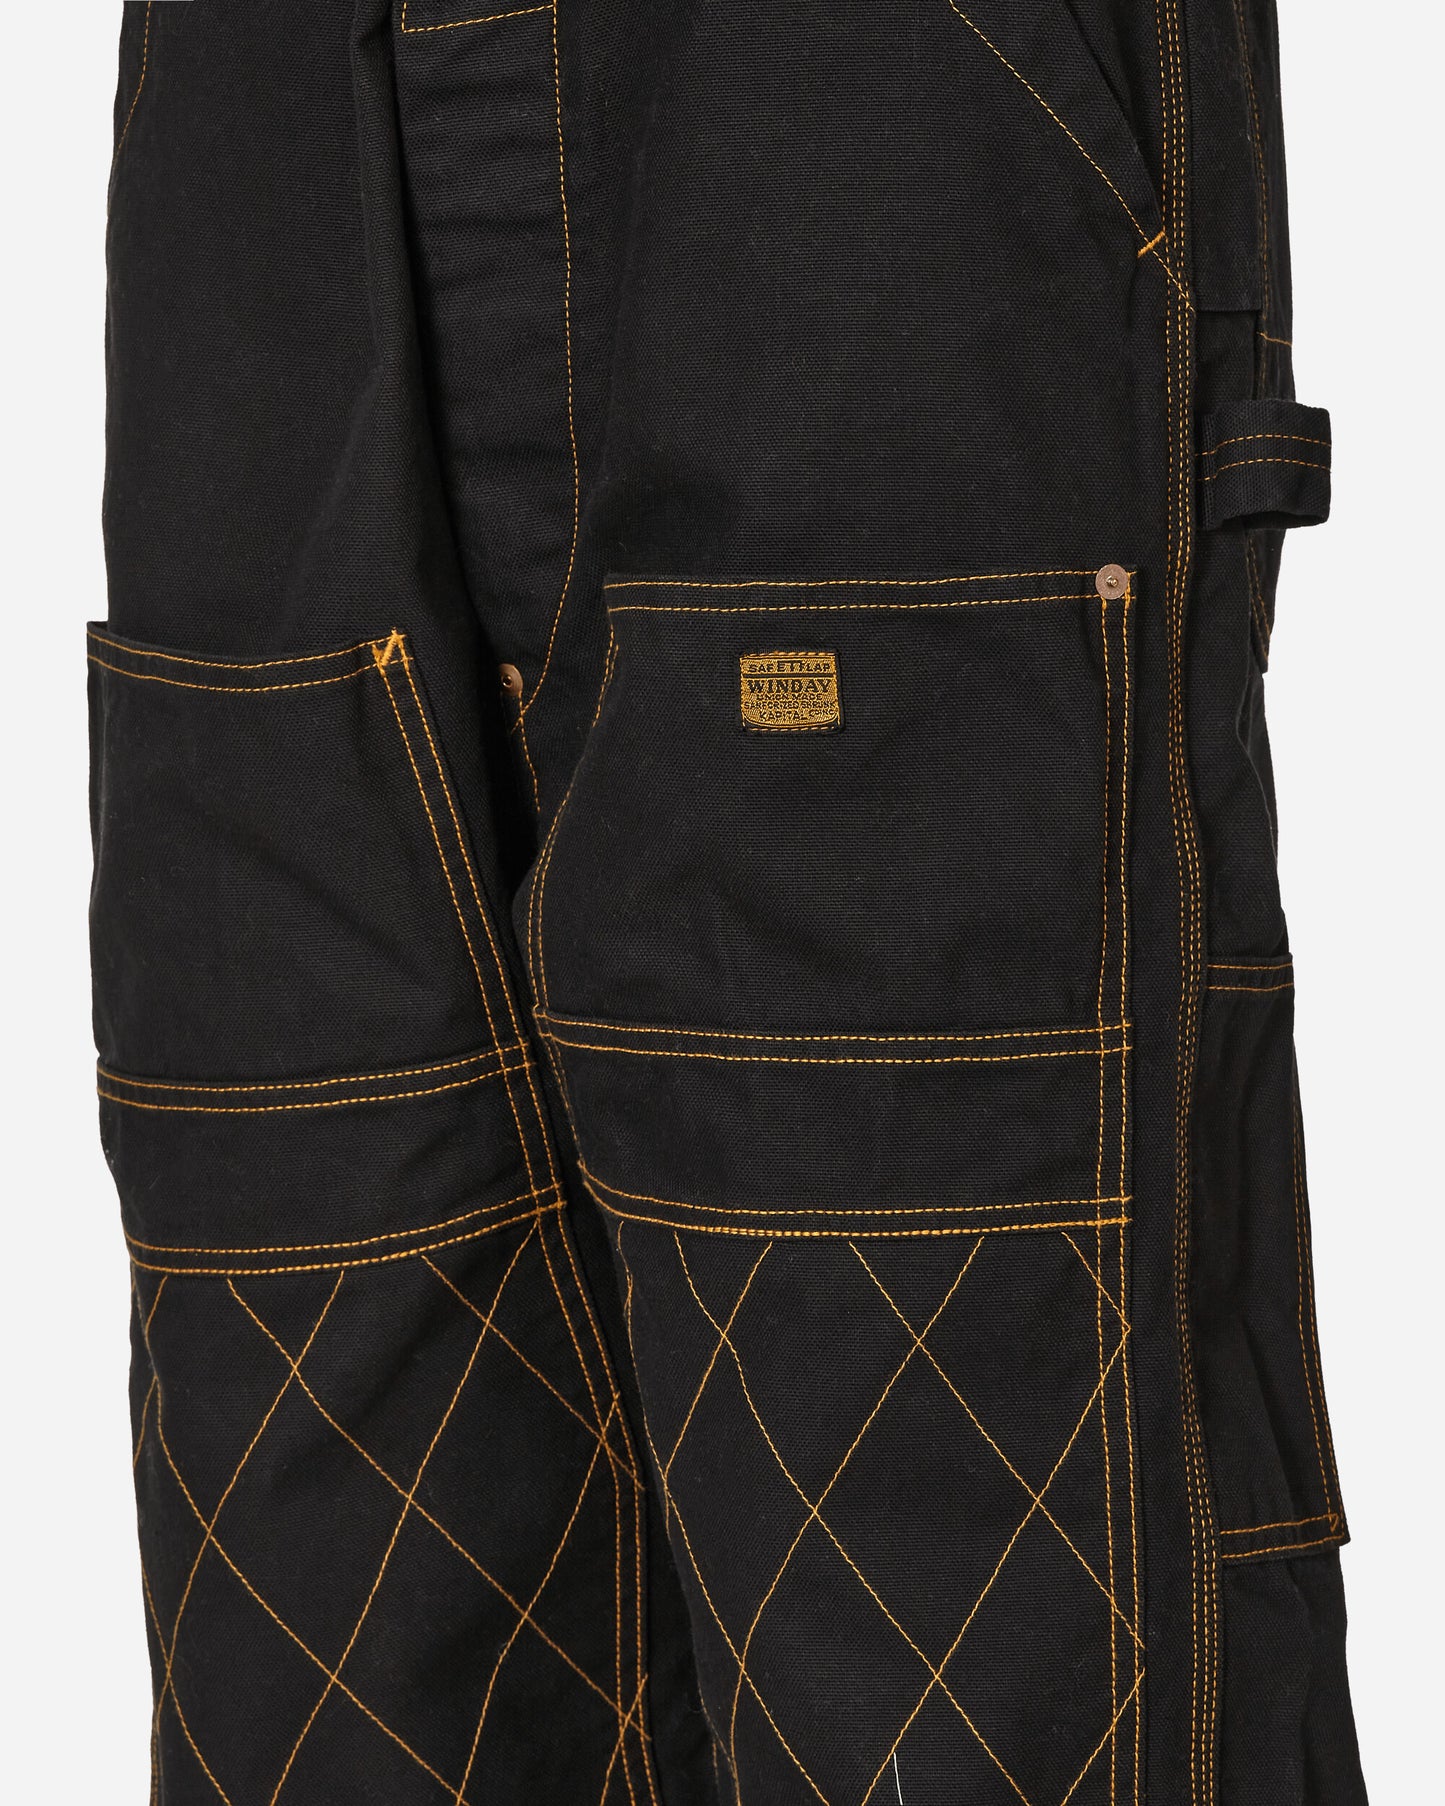 KAPITAL Light Canvas Lumber Pants Black Pants Trousers EK-1420 1